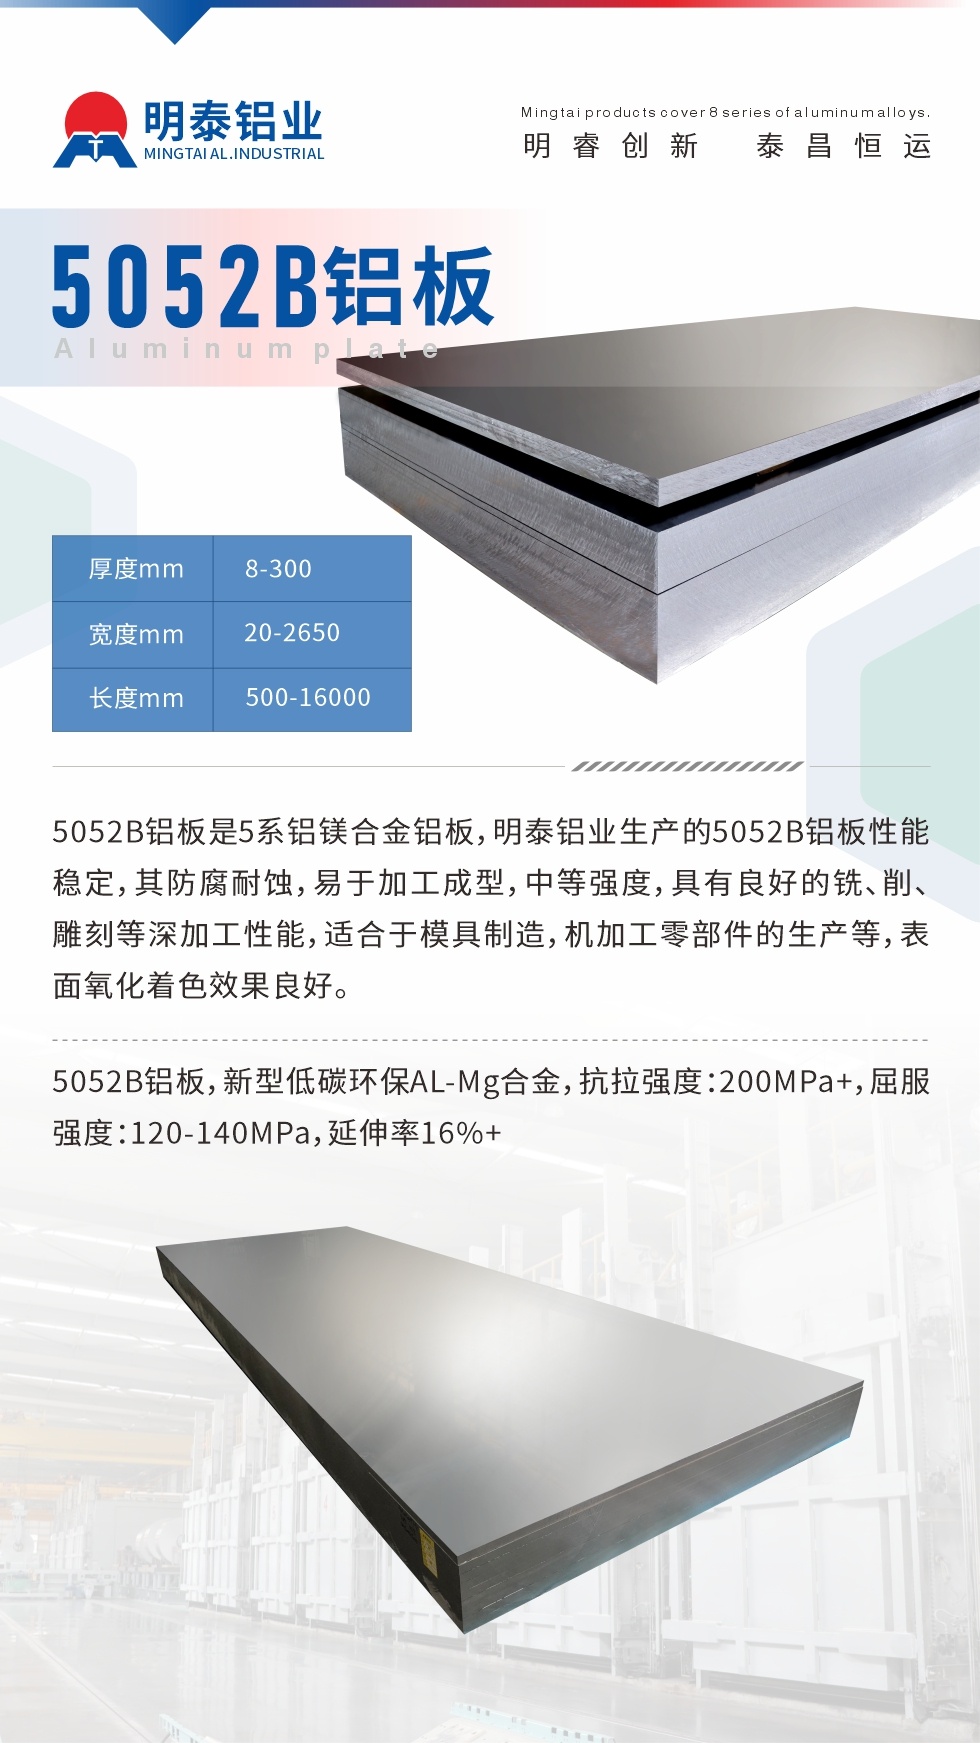 5052B铝板是5系铝镁合金铝板，明泰铝业生产的5052B铝板性能稳定，其防腐耐蚀，易于加工成型，中等强度，具有良好的铣、削、雕刻等深加工性能，适合于模具制造，机加工零部件的生产等，表面氧化着色效果良好。5052B铝板，新型低碳环保AL-Mg合金，抗拉强度：200MPa+，屈服强度：120-140MPa，延伸率16%+